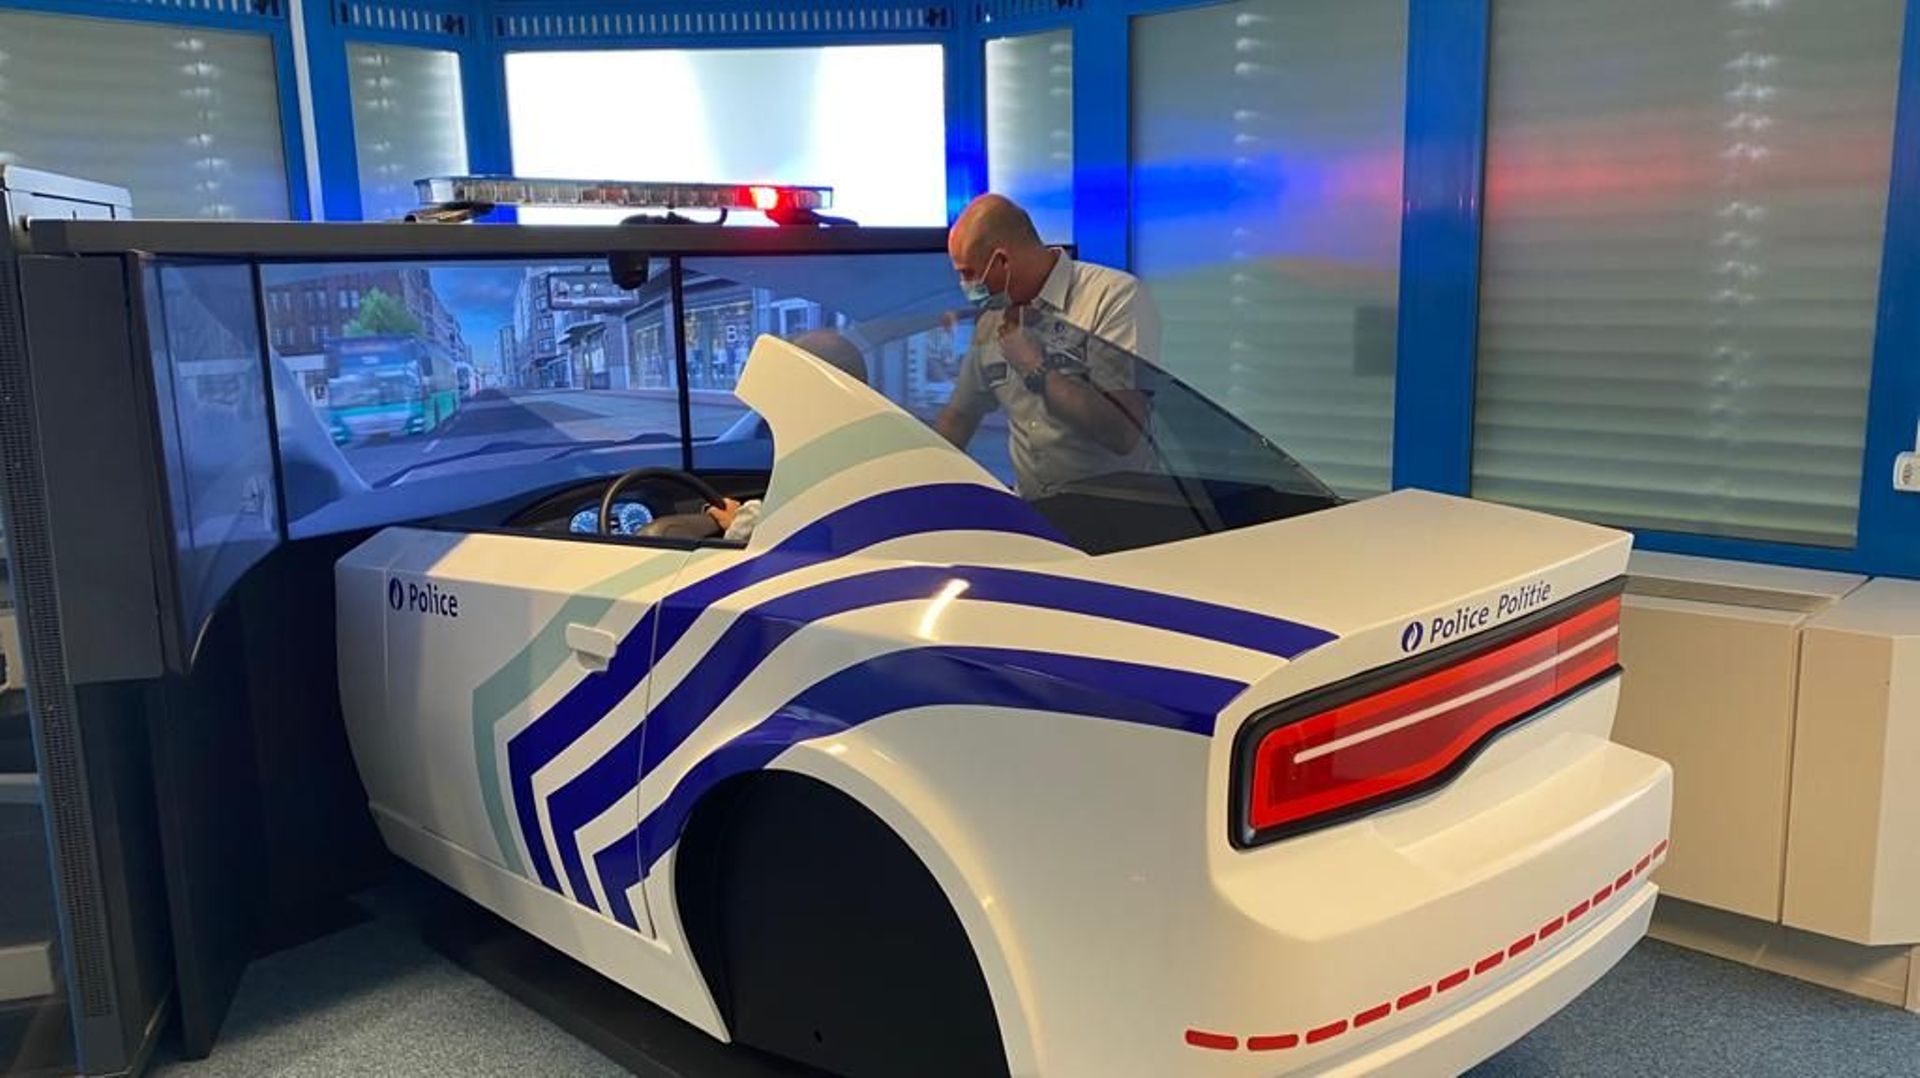 le campus  Brusafe dispose d'une première européenne avec un simulateur de conduite d'un véhicule de police entièrement personnalisé et mis à la disposition des futurs officiers et inspecteurs.